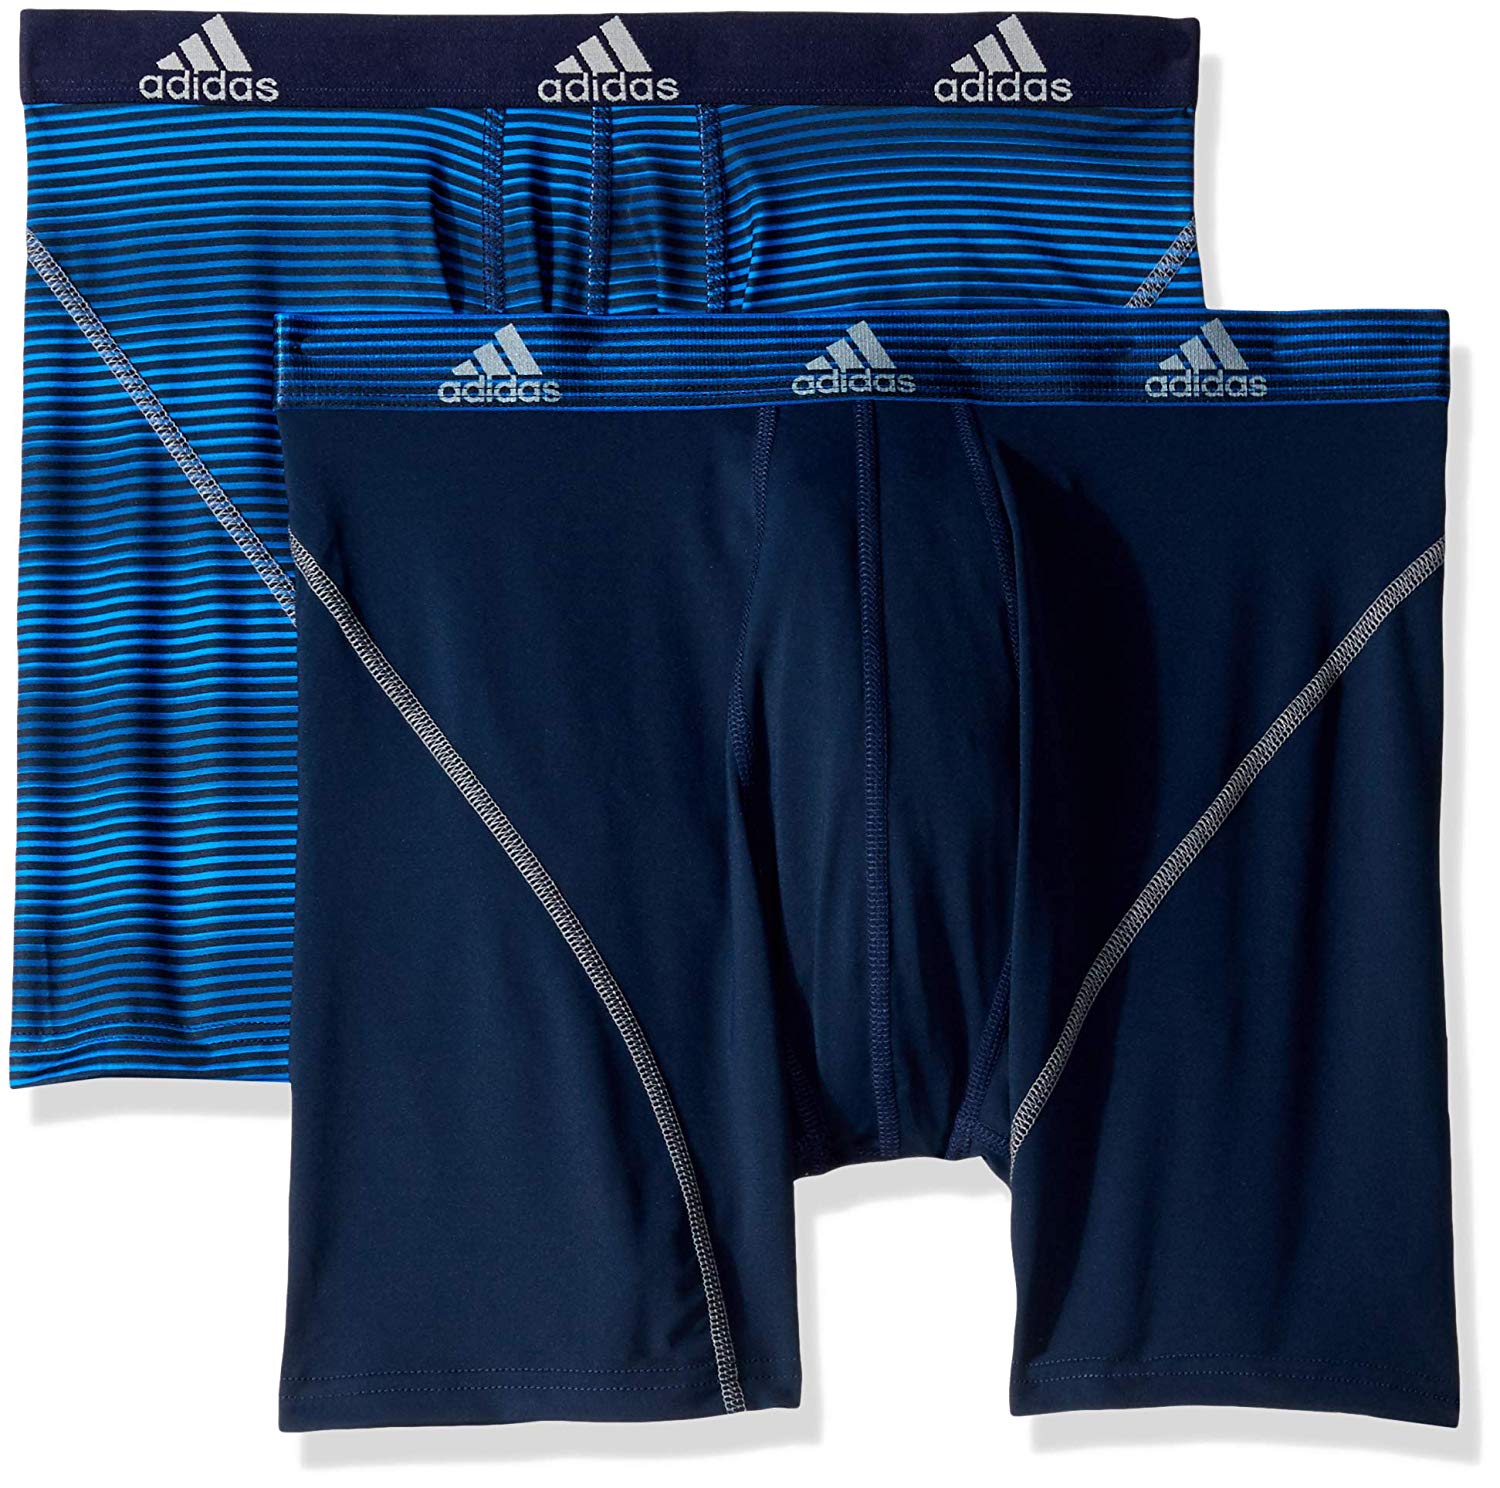 adidas Men's Sport Performance Climalite Boxer Briefs Underwear, Blue ...